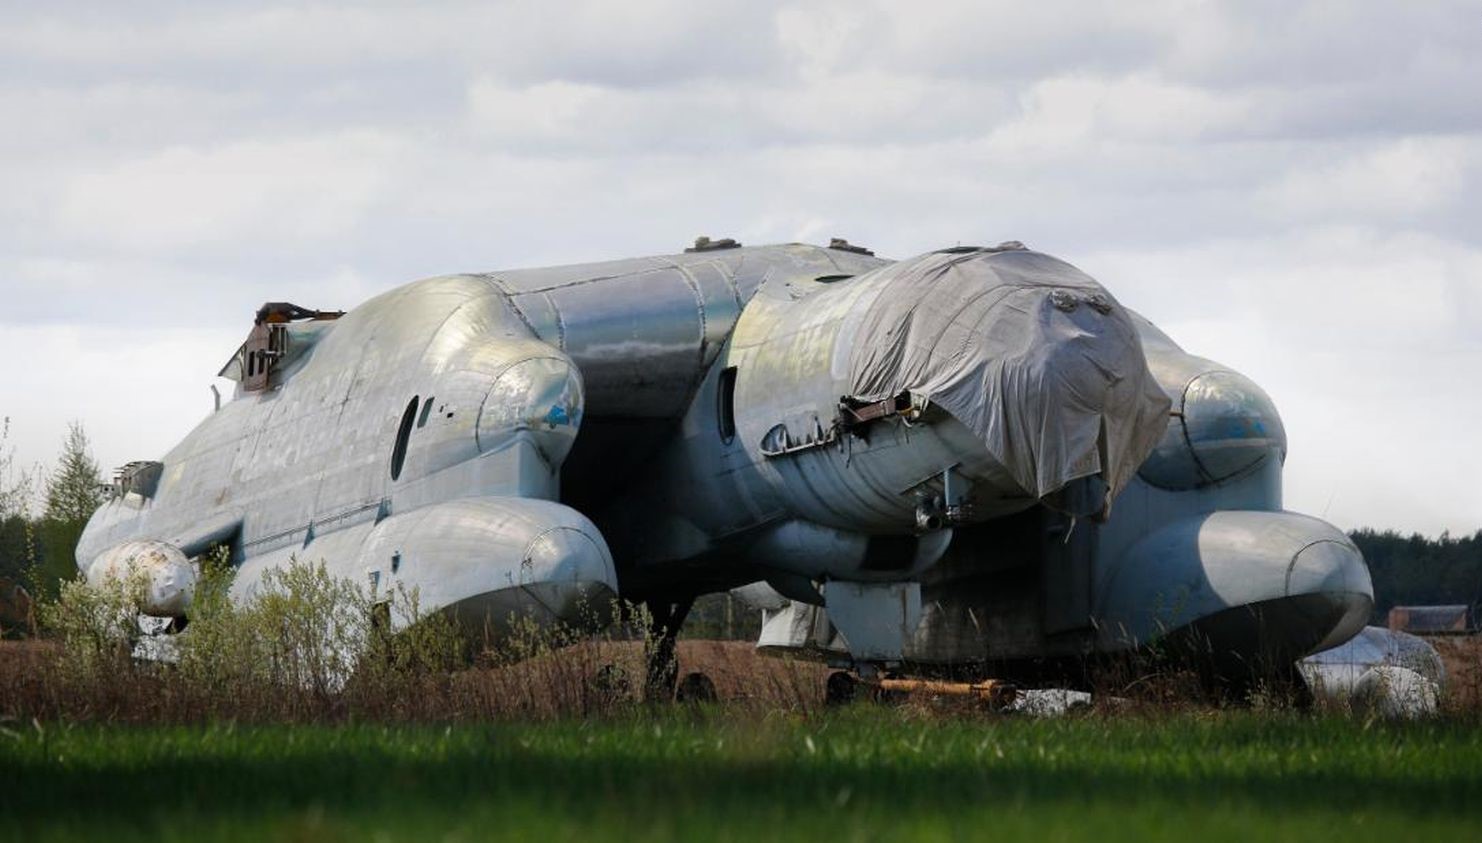 aviației care nu a decolat niciodată, pe un câmp lângă Moscova